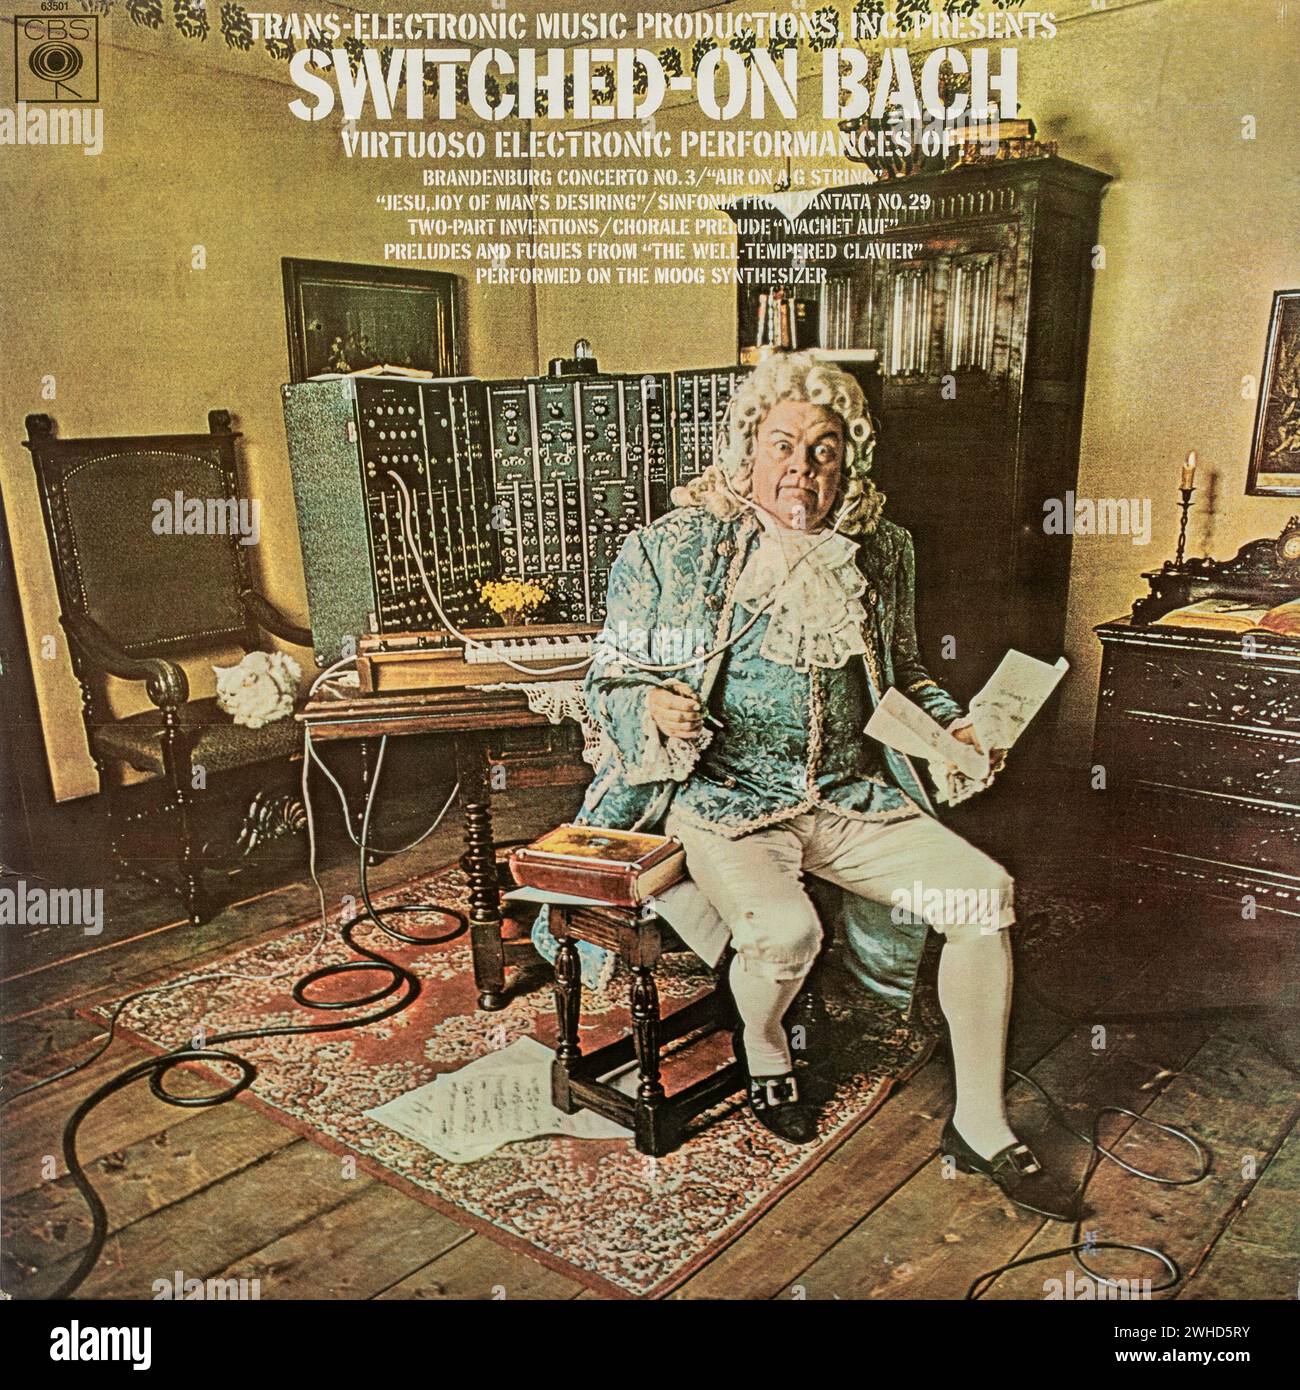 Walter oder Wendy Carlos wechselten auf Bach-LP-Album-Cover Stockfoto